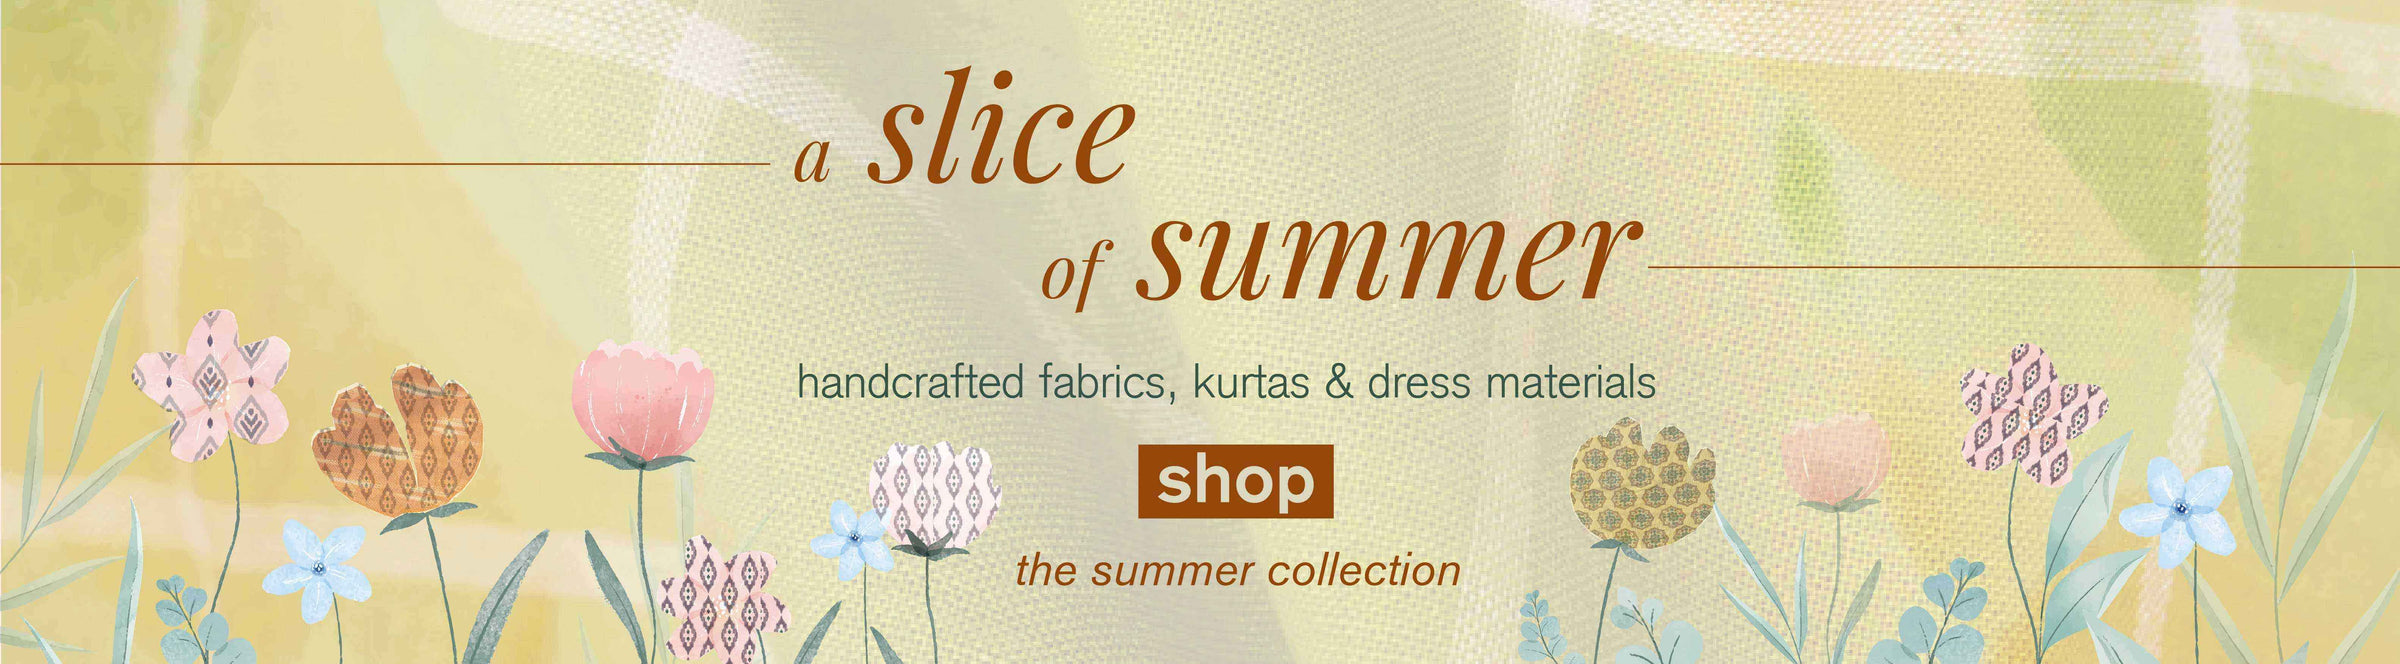 Summer fabrics